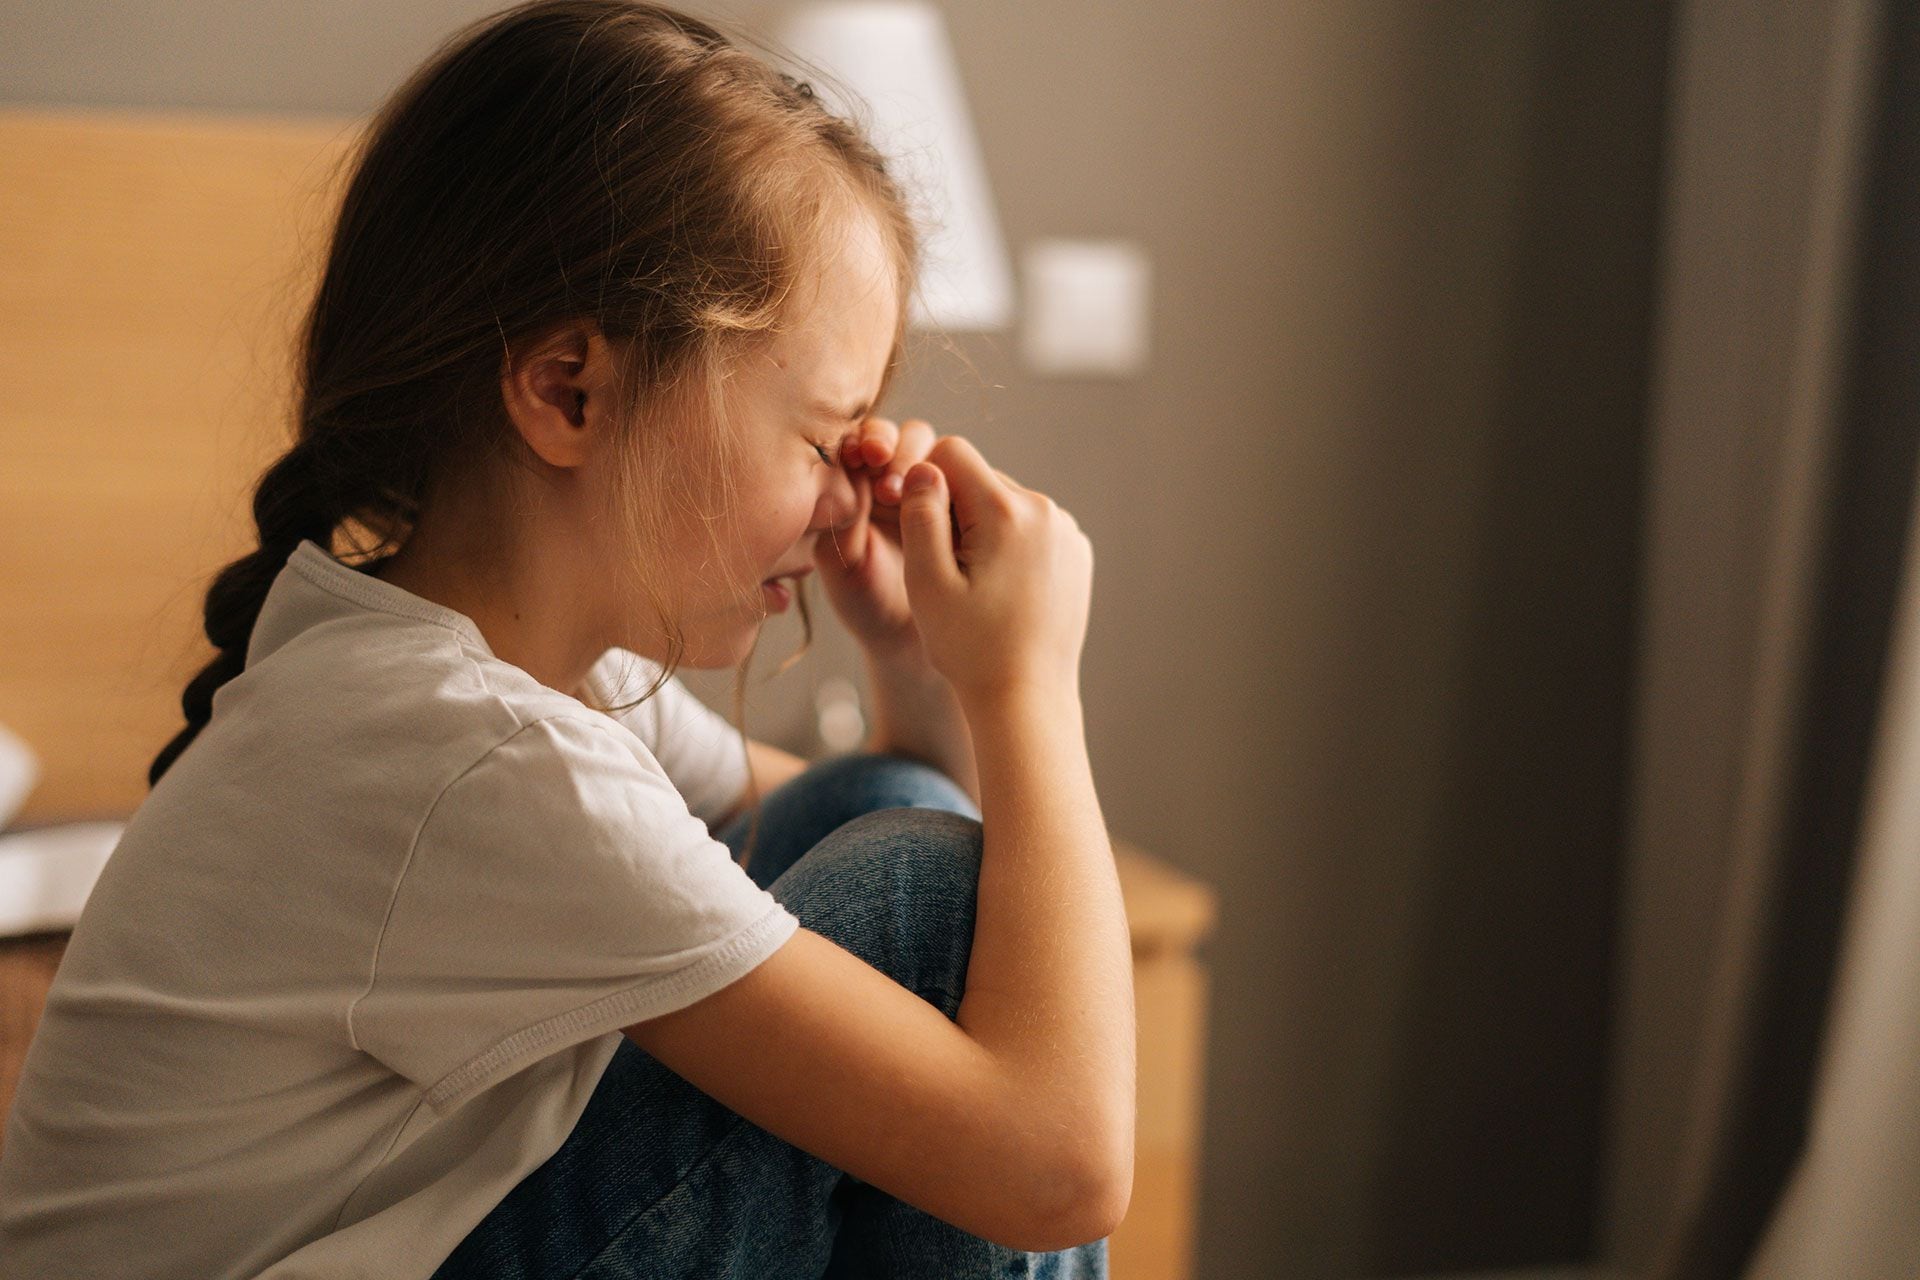 “Los niños y niñas expuestos a condiciones estresantes graves, como el abandono, negligencia, abuso sexual y malos tratos durante sus primeros años de vida, desarrollan lo que llamamos trastorno por estrés postraumático (TEPT)”, dice Sonia Almada
(Freepik)